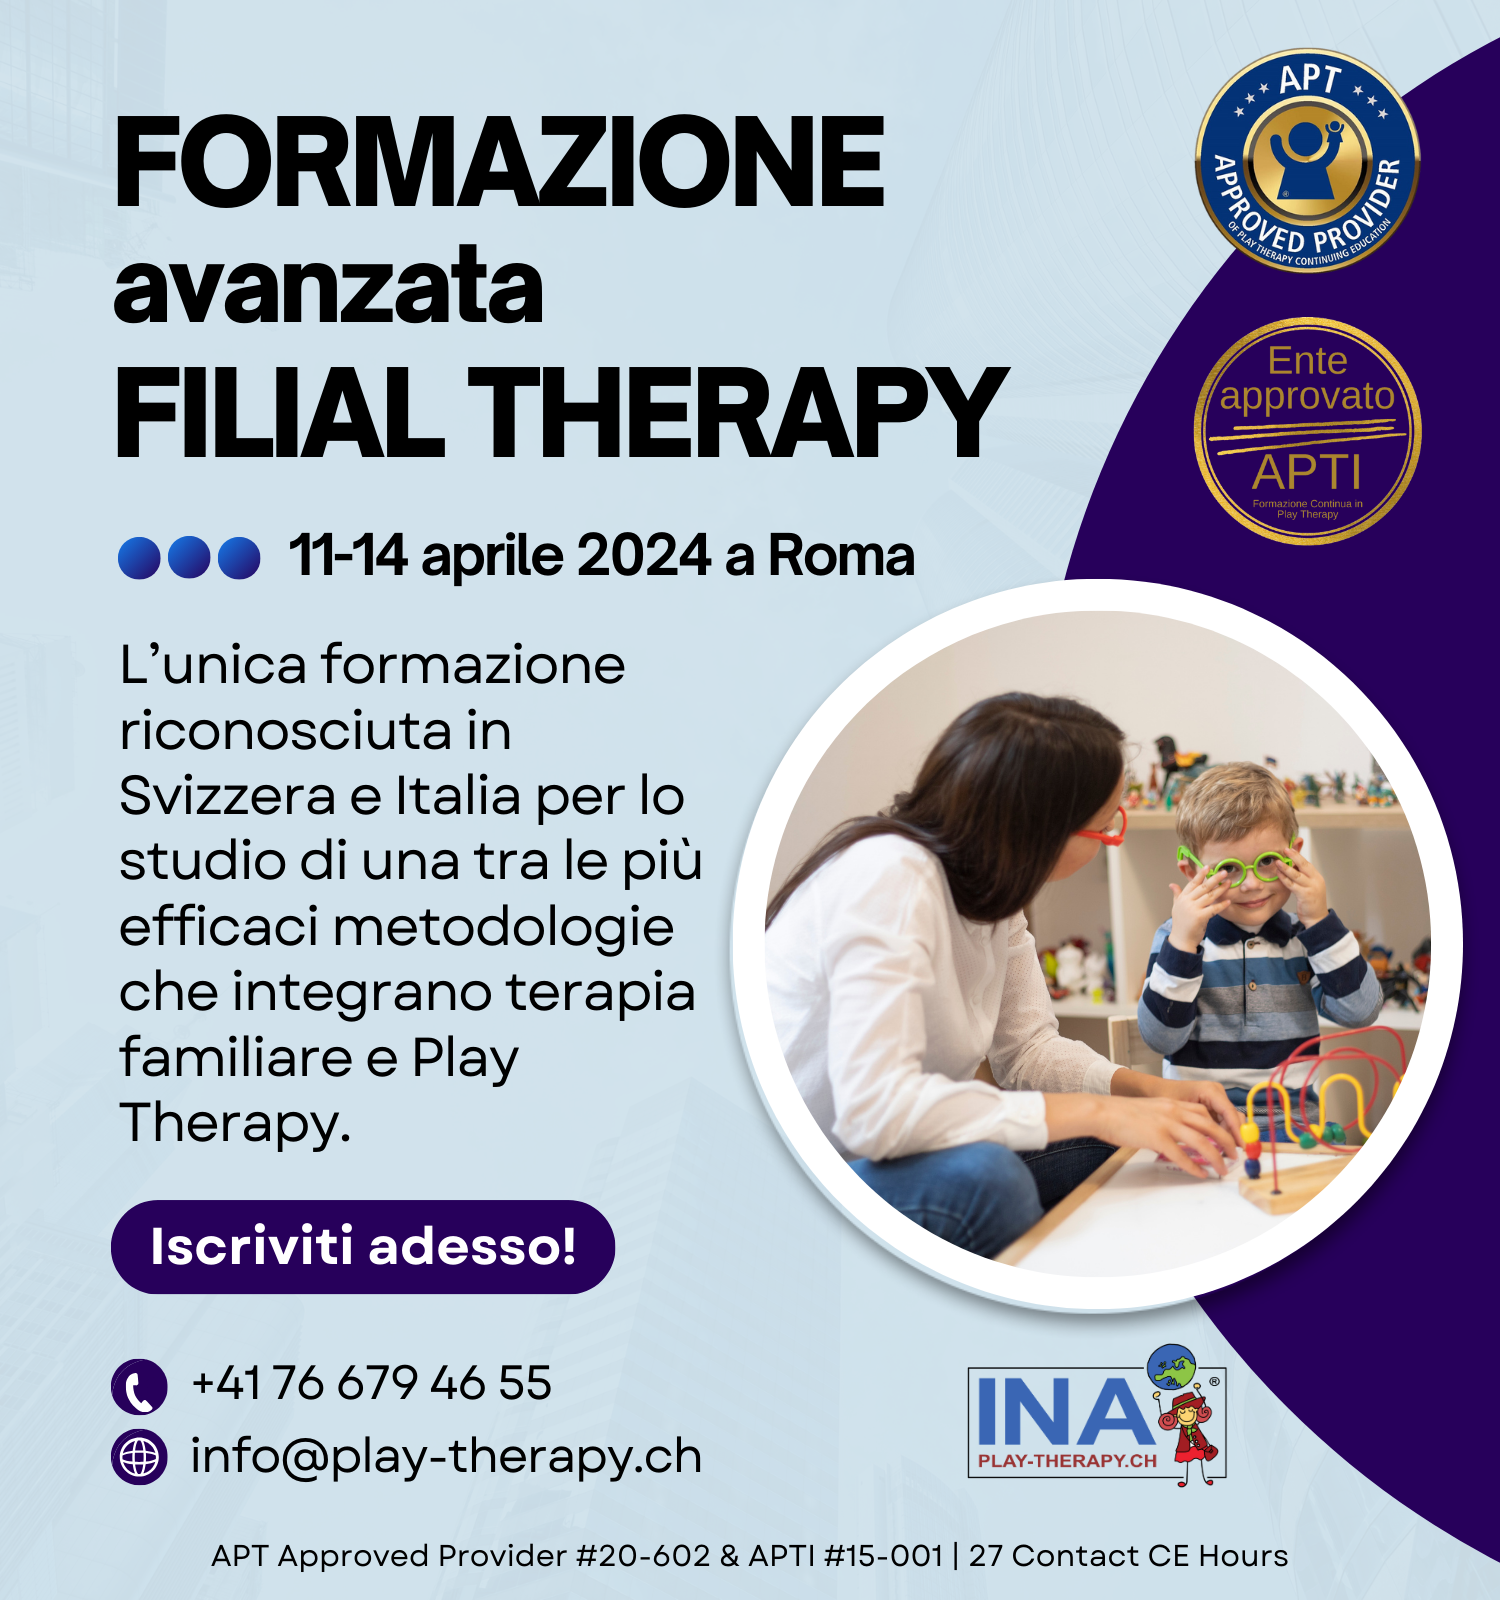 formazione filial therapy roma